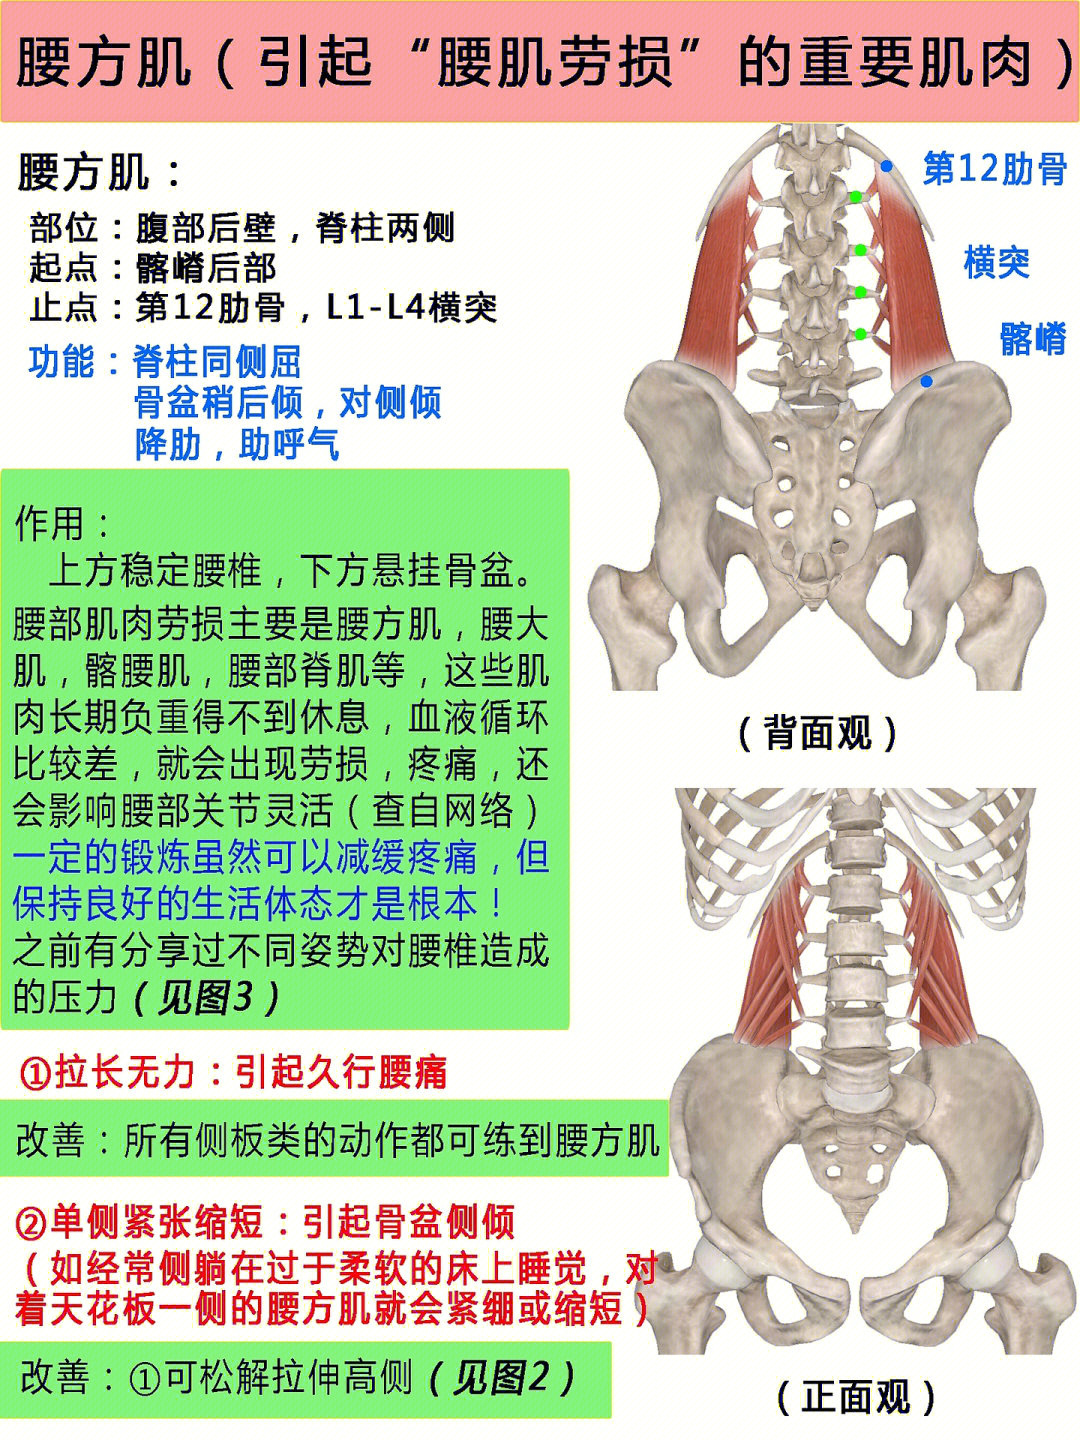 腰方肌肌肉紧绷的症状:16615腰背部疼痛26615大力吸气时腰背